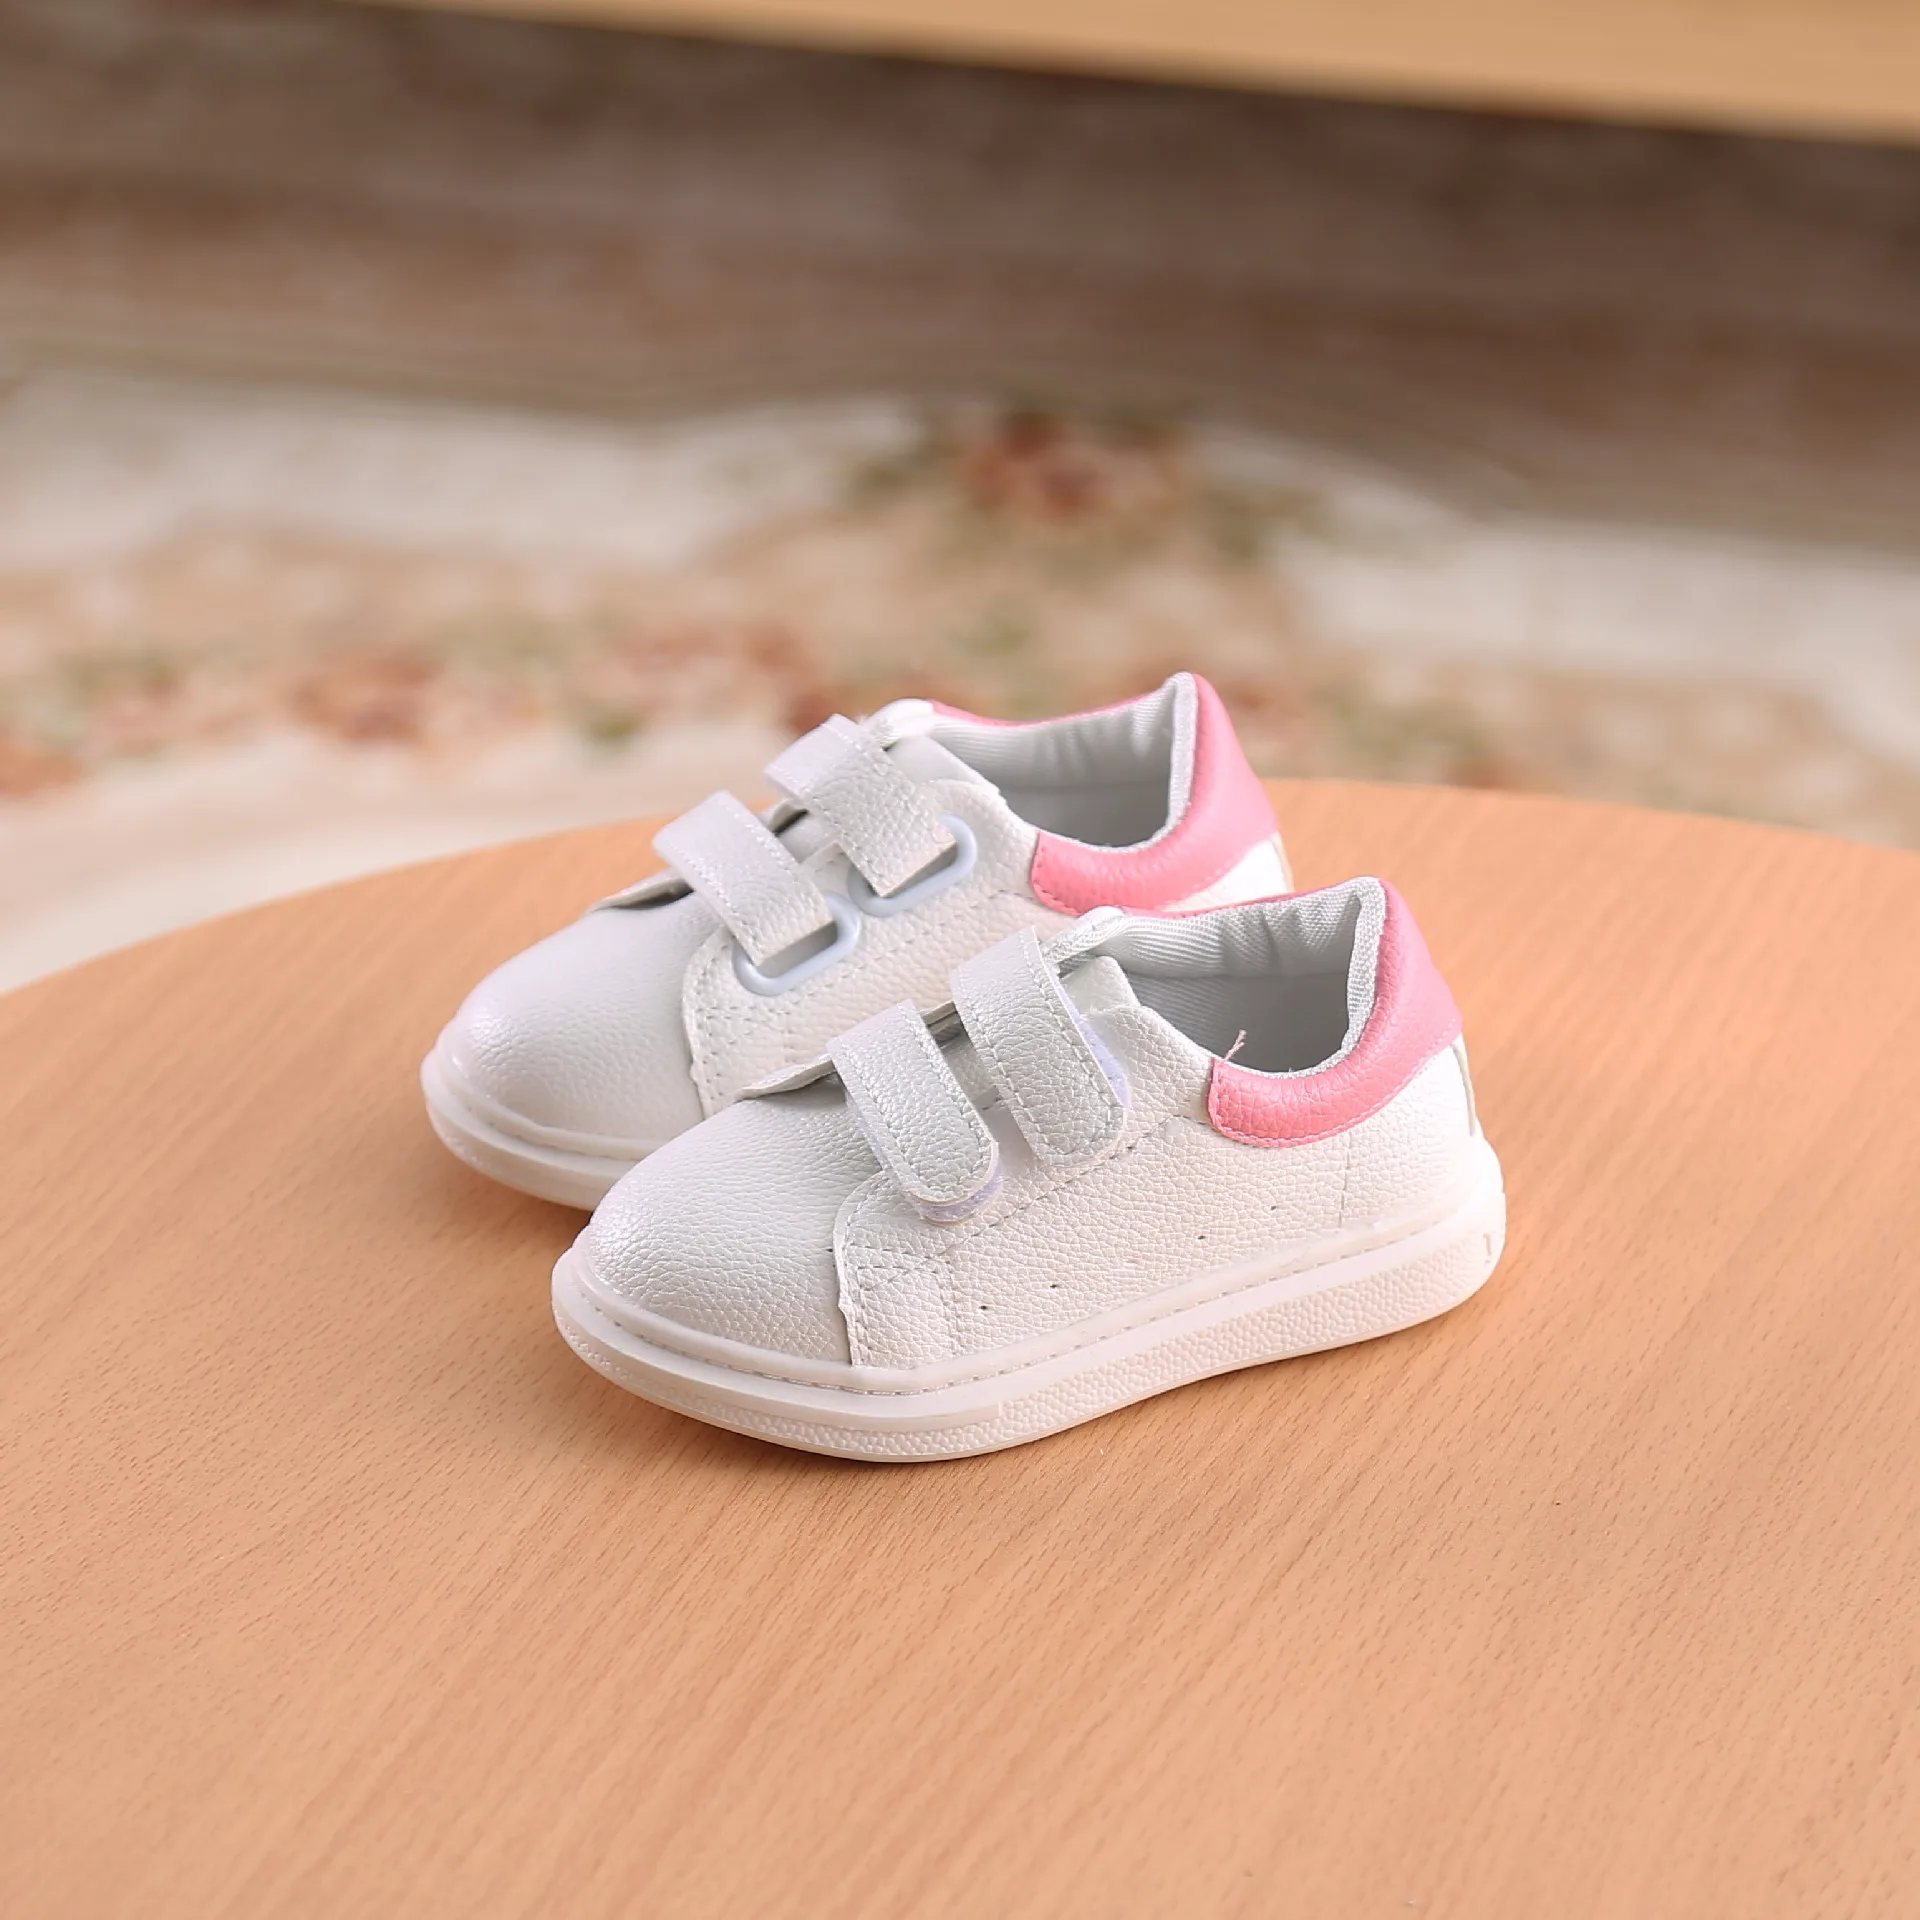 Детская повседневная обувь наивысшего качества, мягкая спортивная обувь для мальчиков и девочек, модная детская обувь на плоской подошве для первых прогулок от 1 до 3 лет - Цвет: Розовый